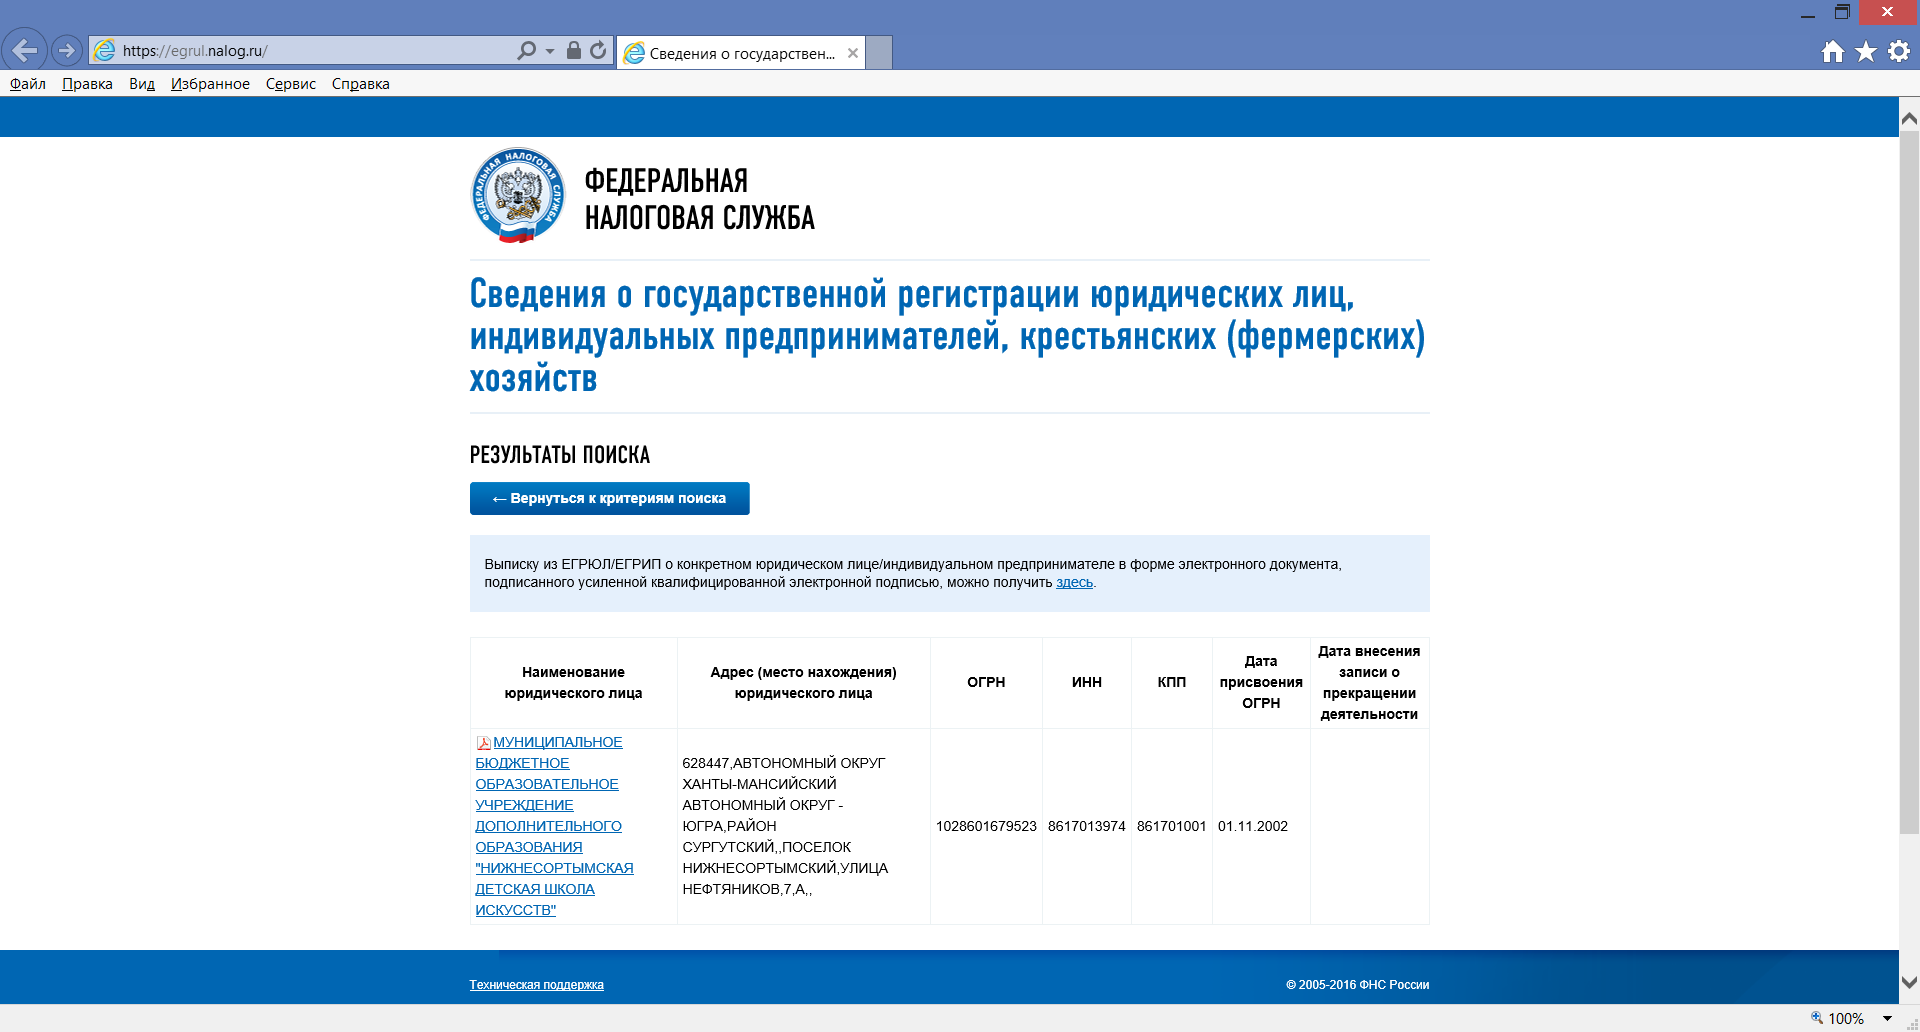 Egrul.nalog.ru. Устав на сайте налоговой